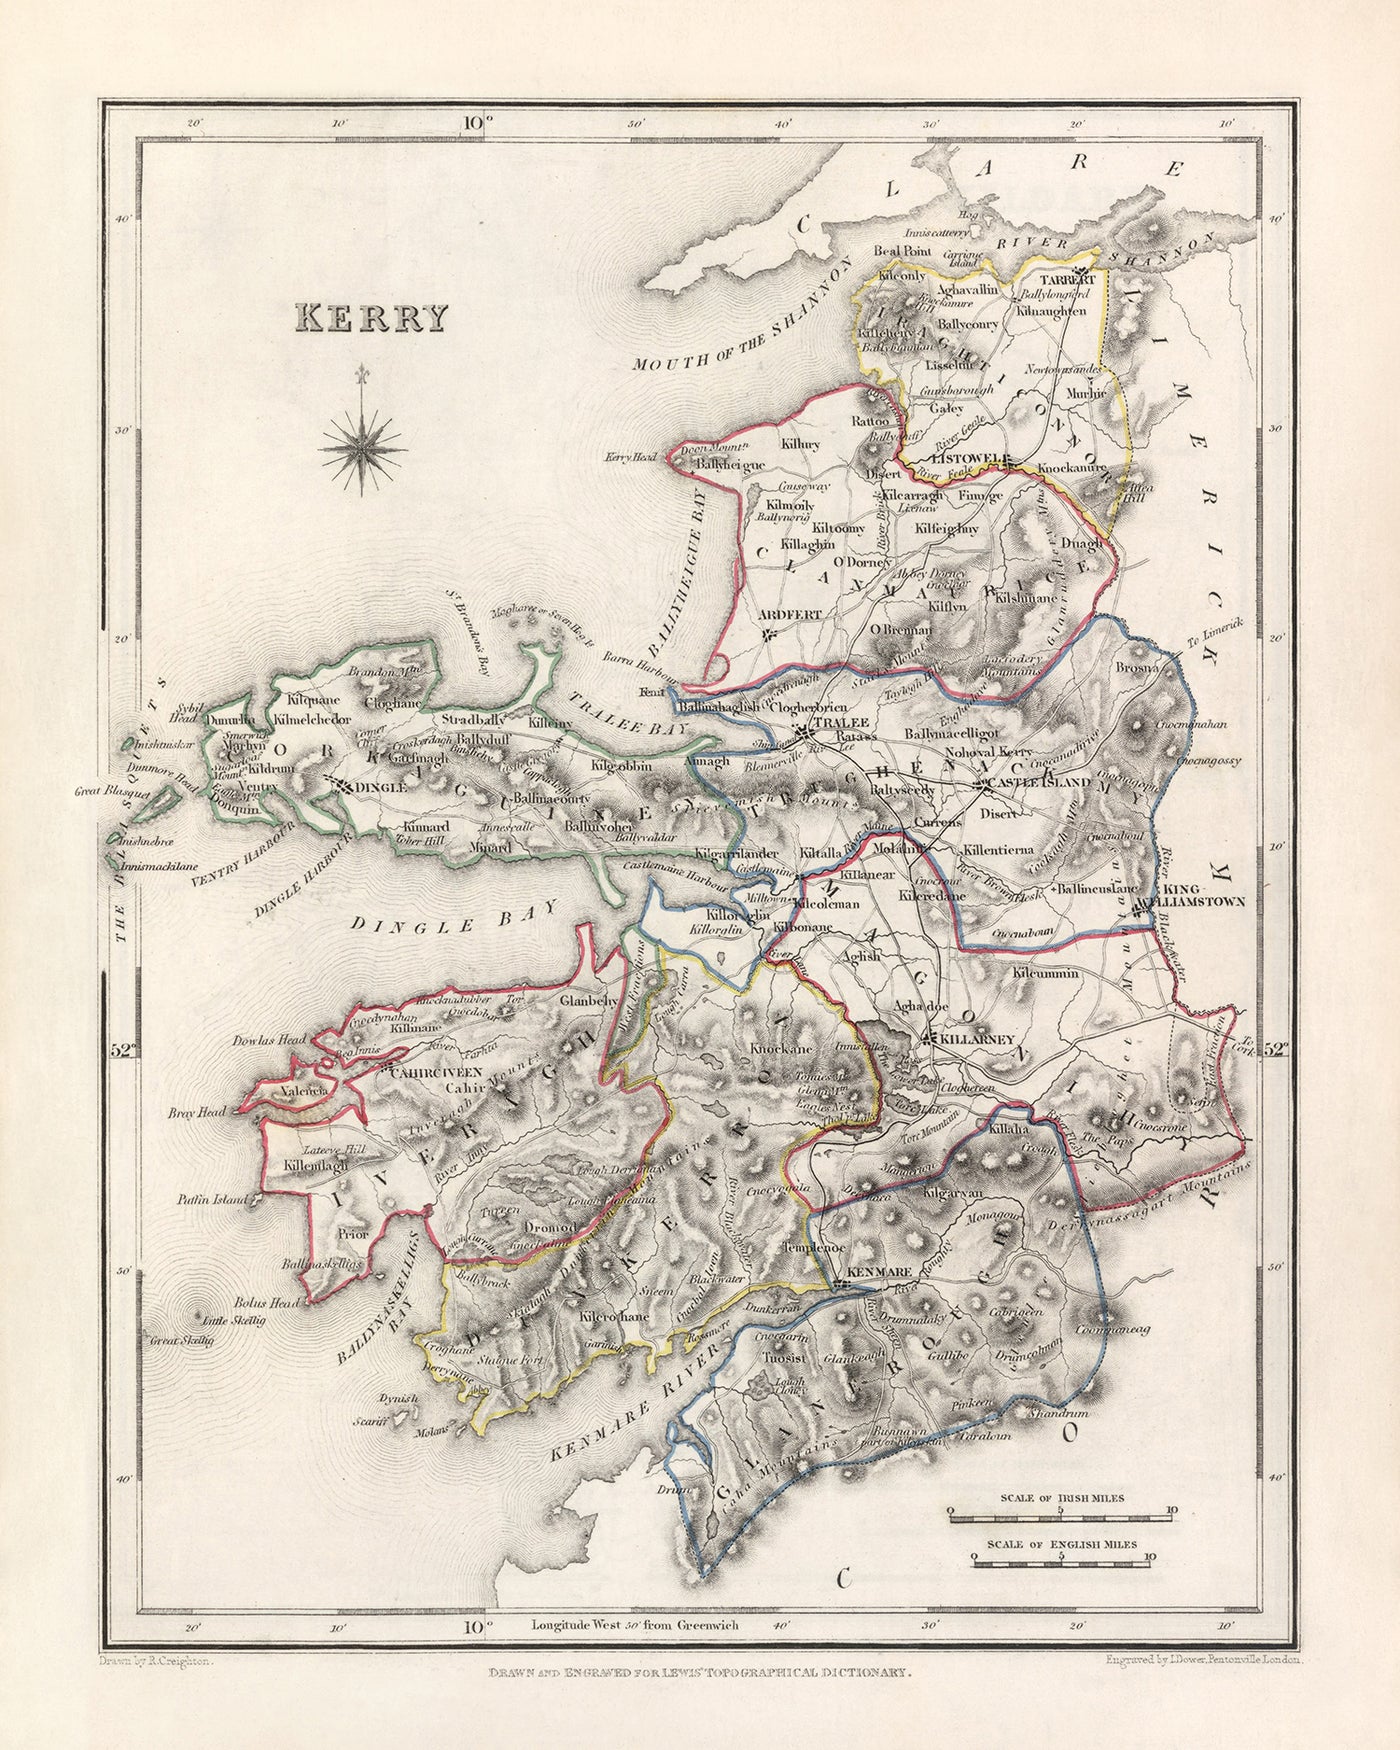 Mapa antiguo del condado de Kerry por Samuel Lewis, 1844: Tralee, Killarney, Dingle, Kenmare y Listowel